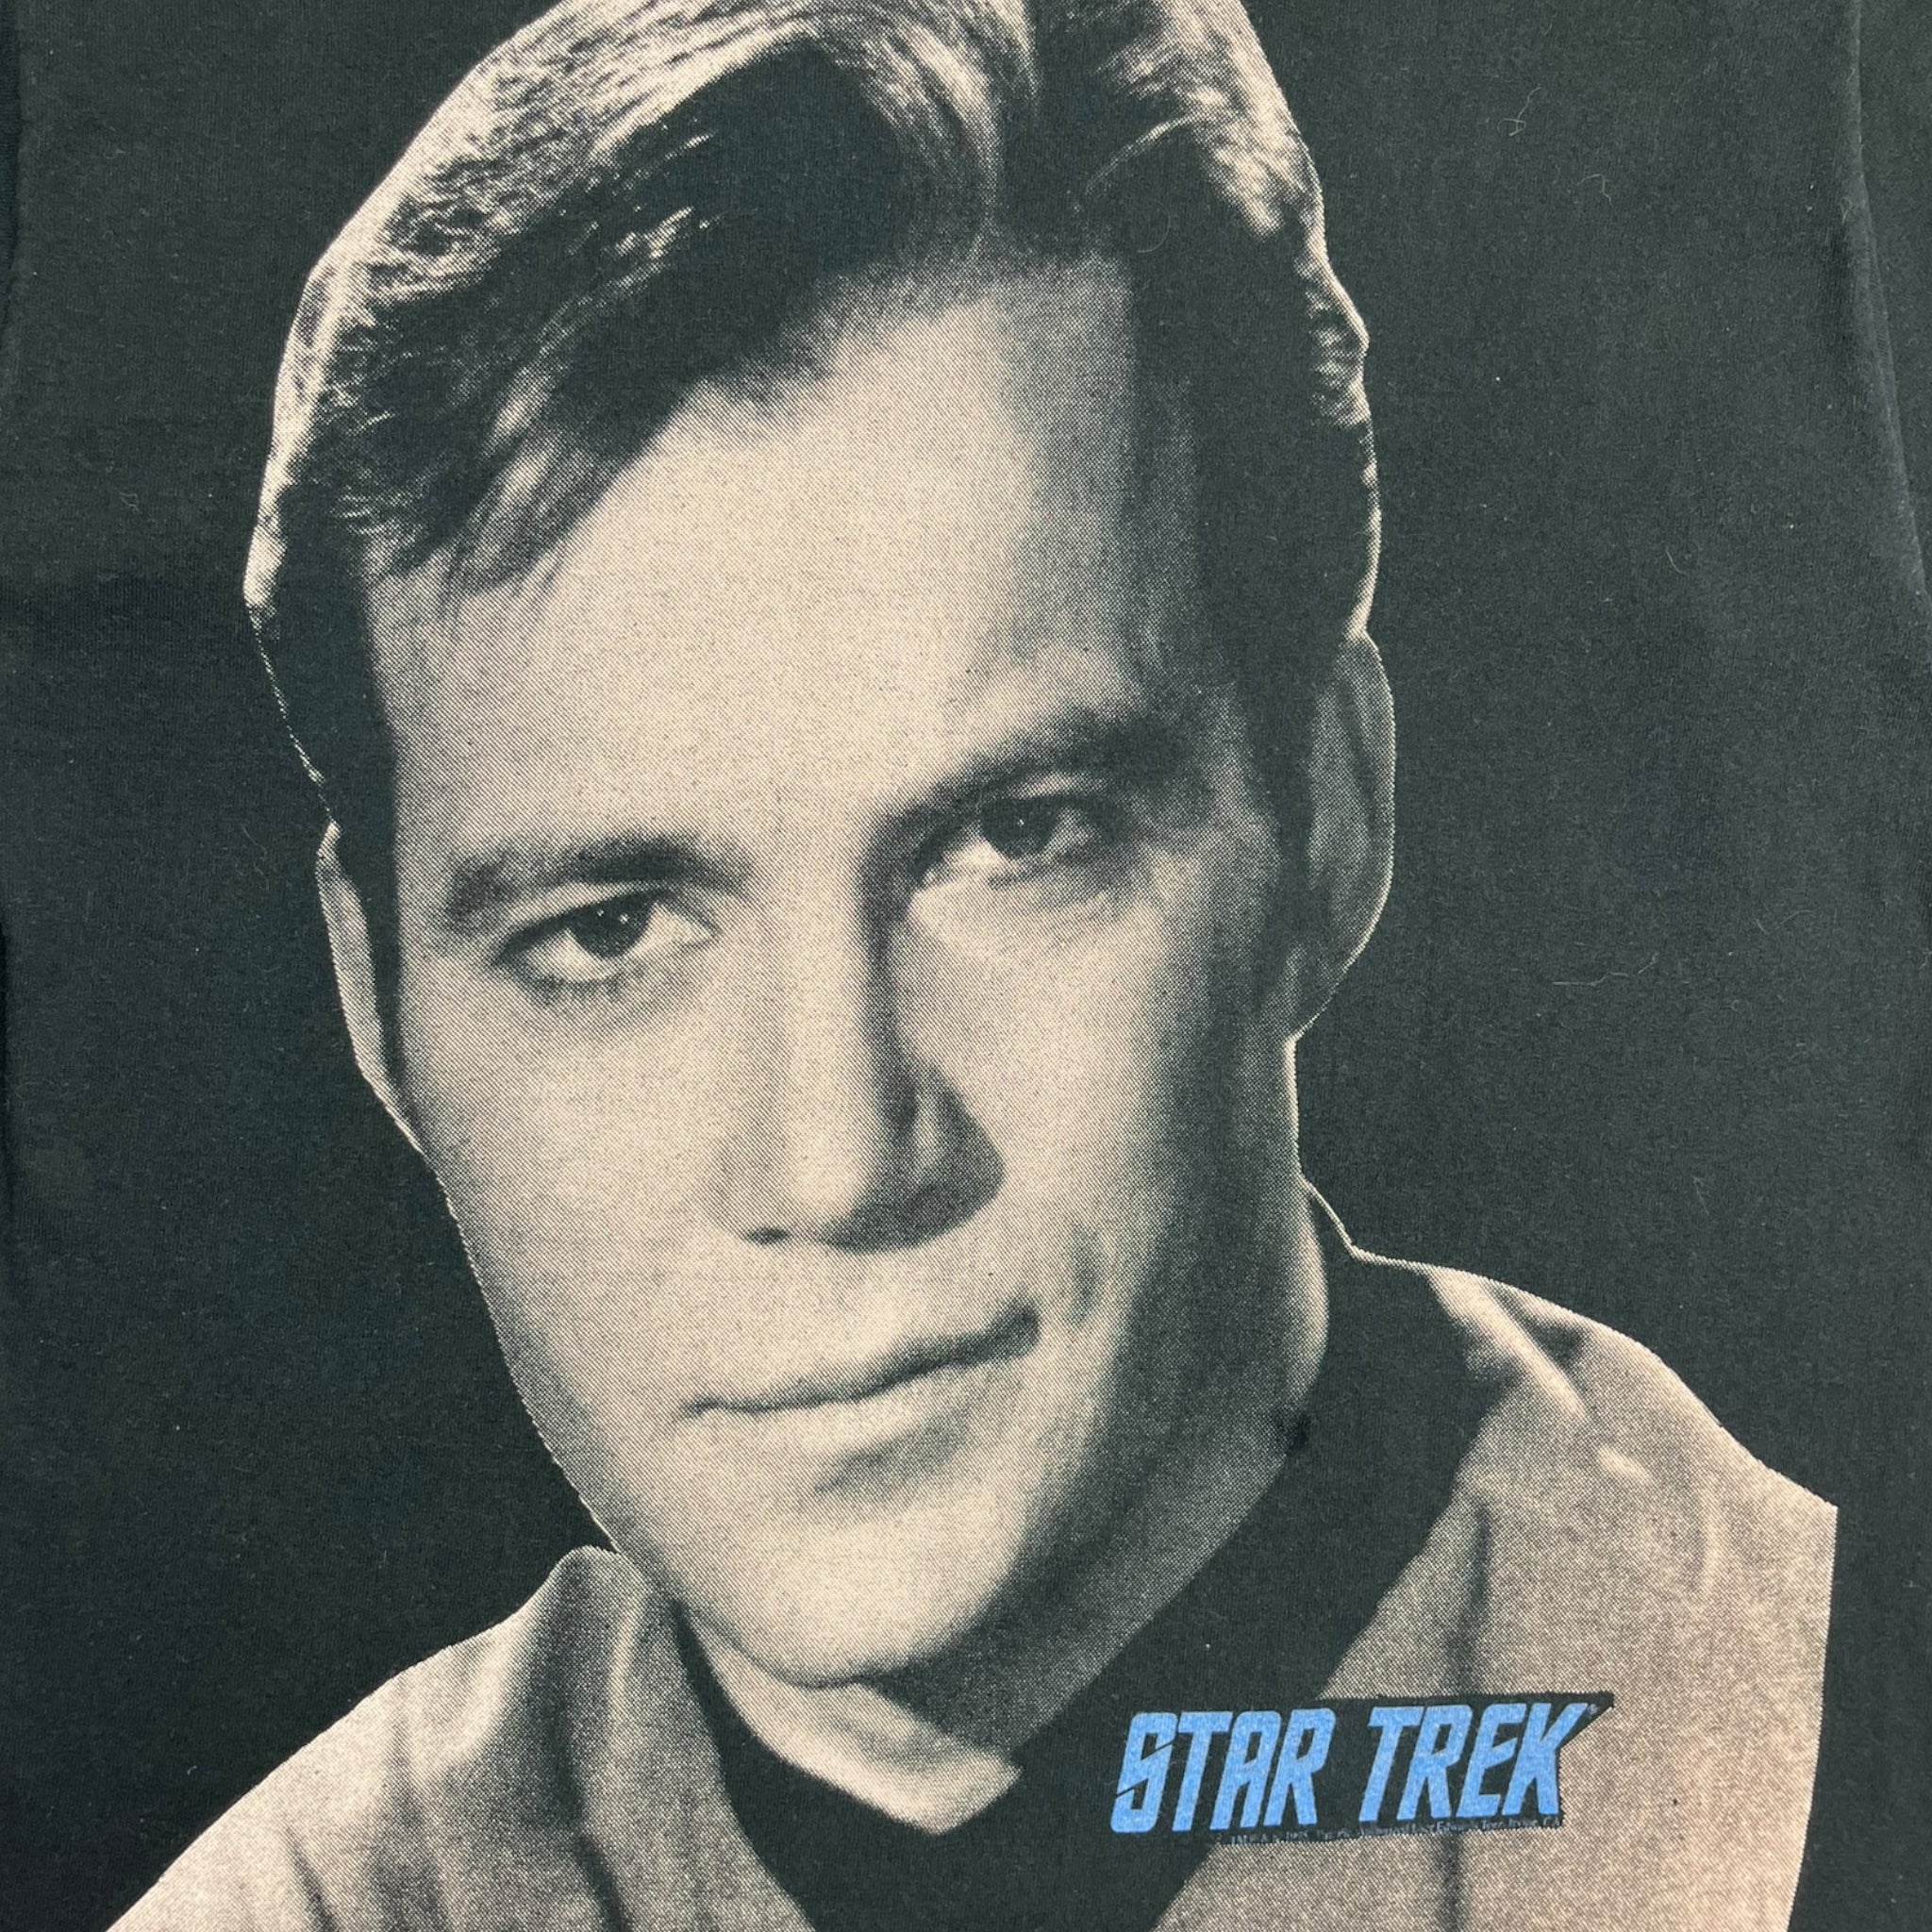 1995 Captain Kirk Star Trek T-Shirt